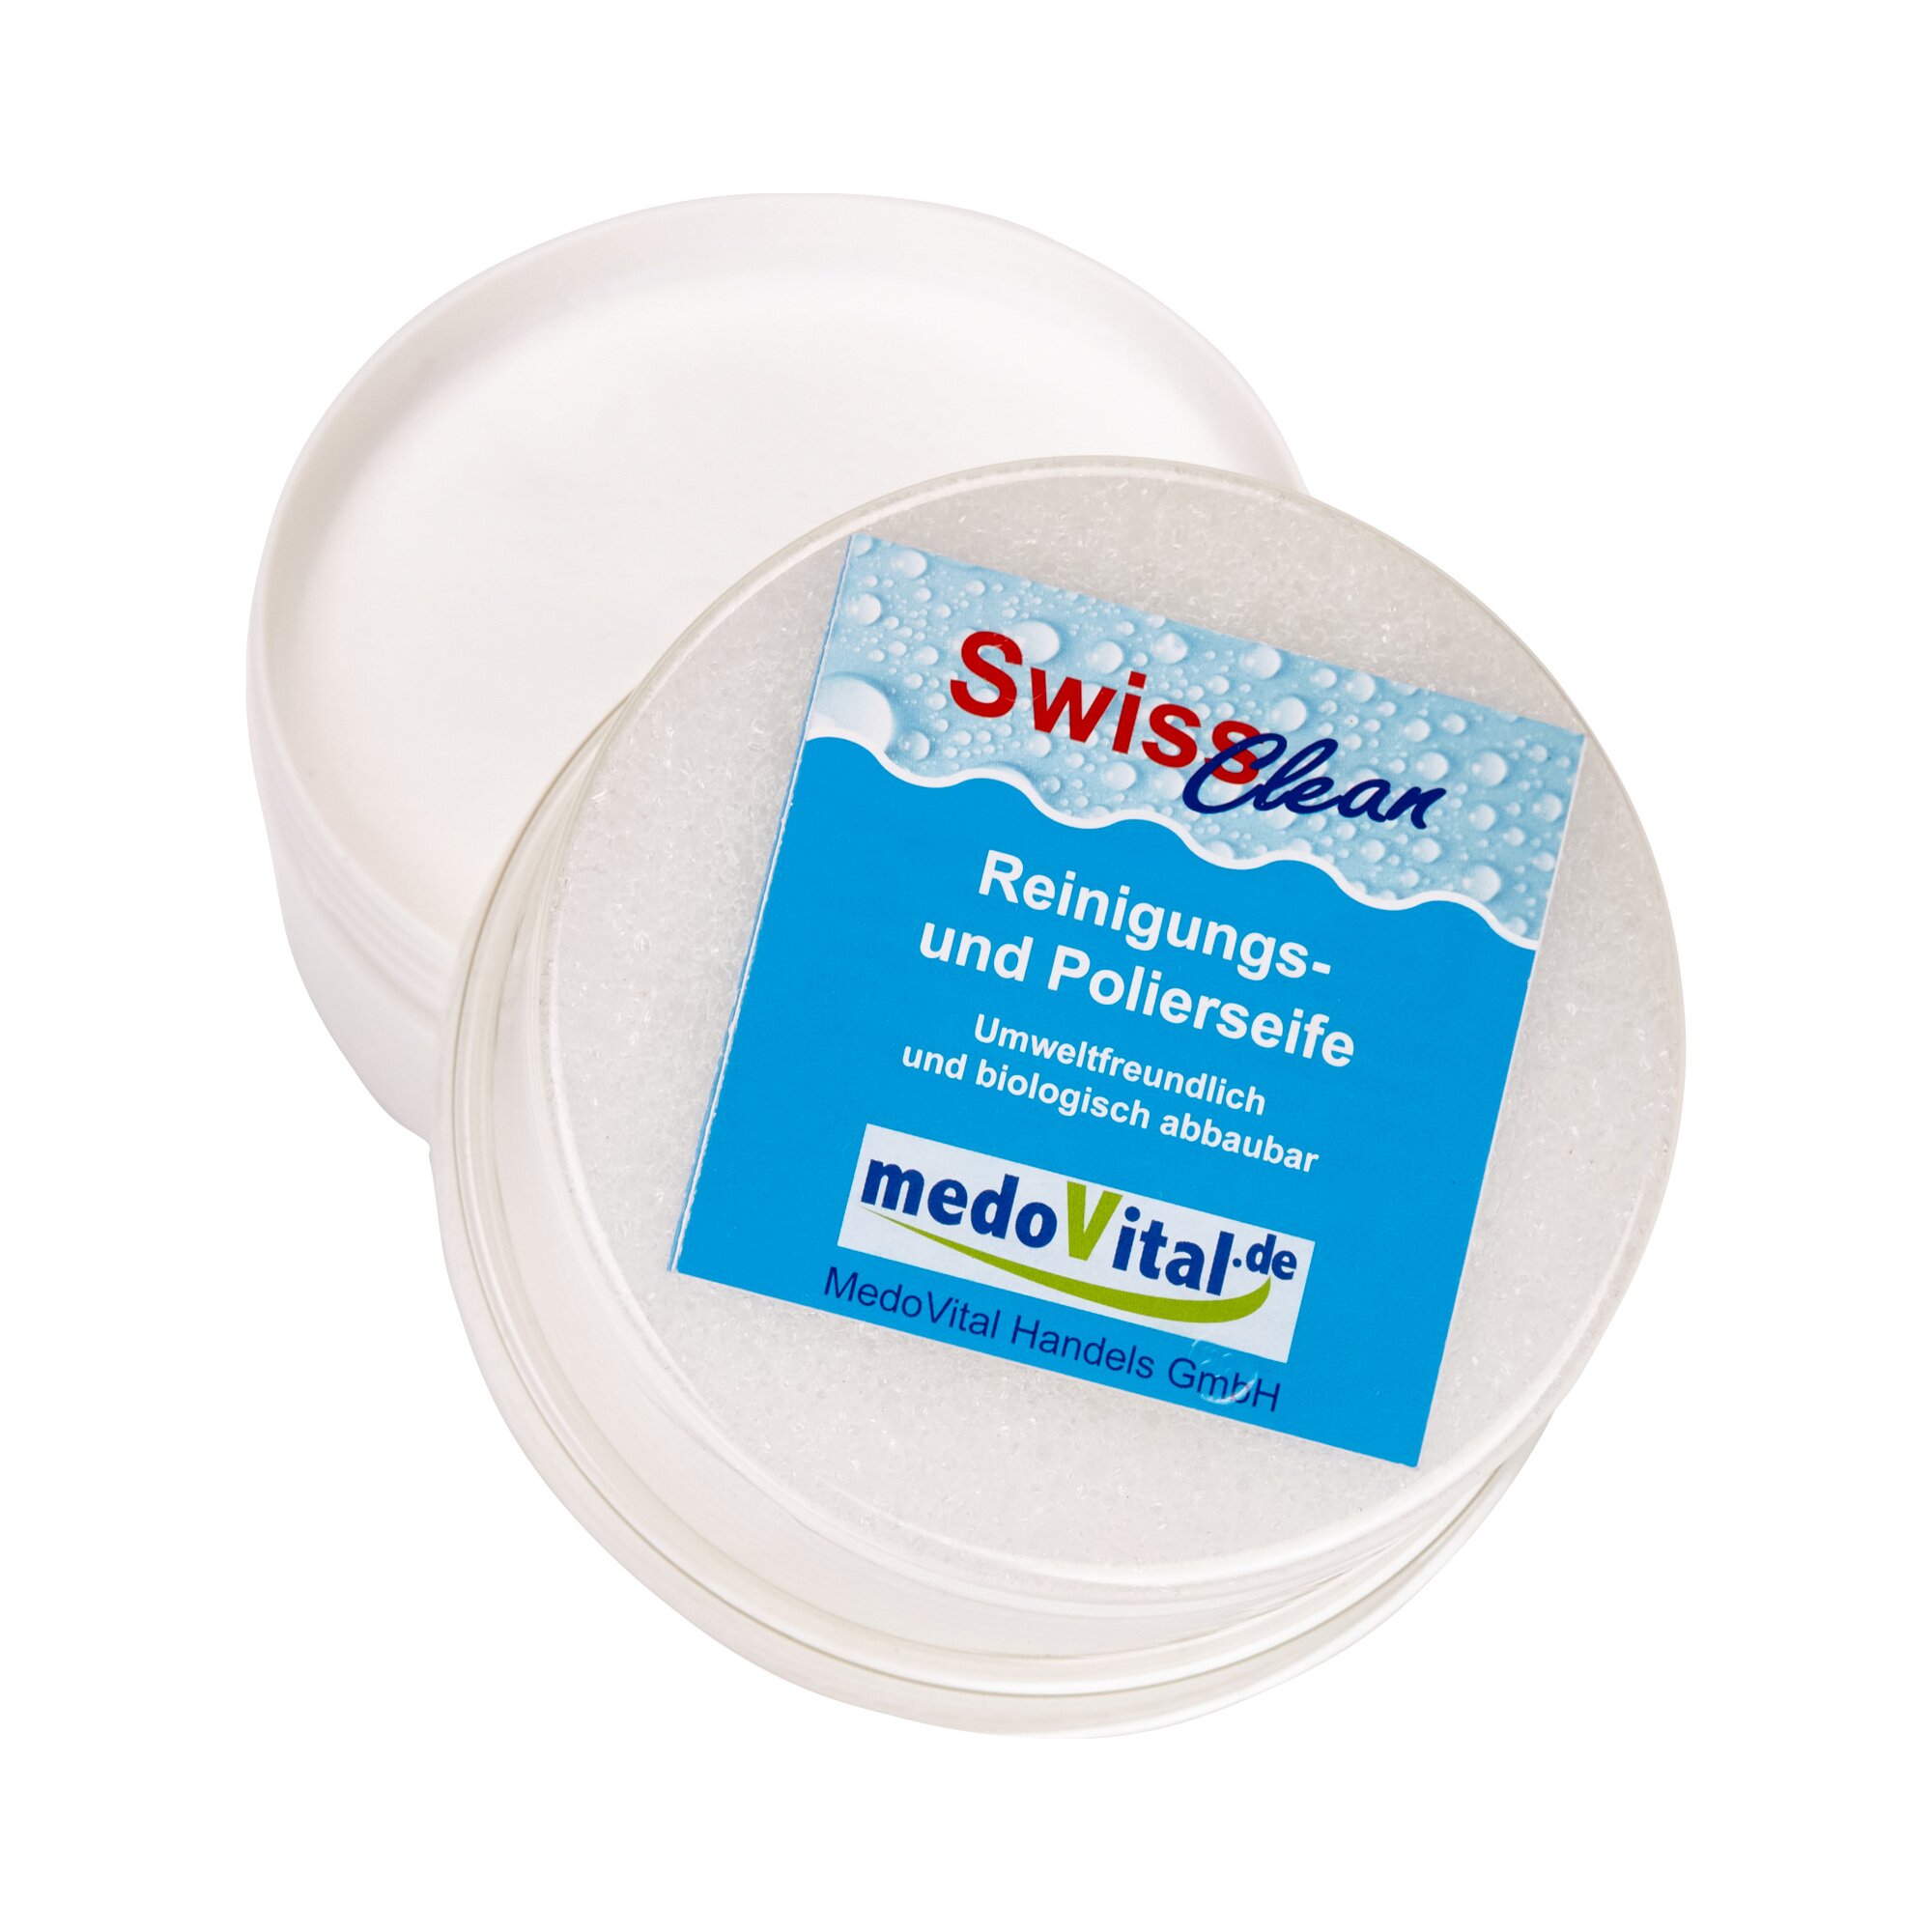 MedoVital Swiss Reinigungs- und Polierseife